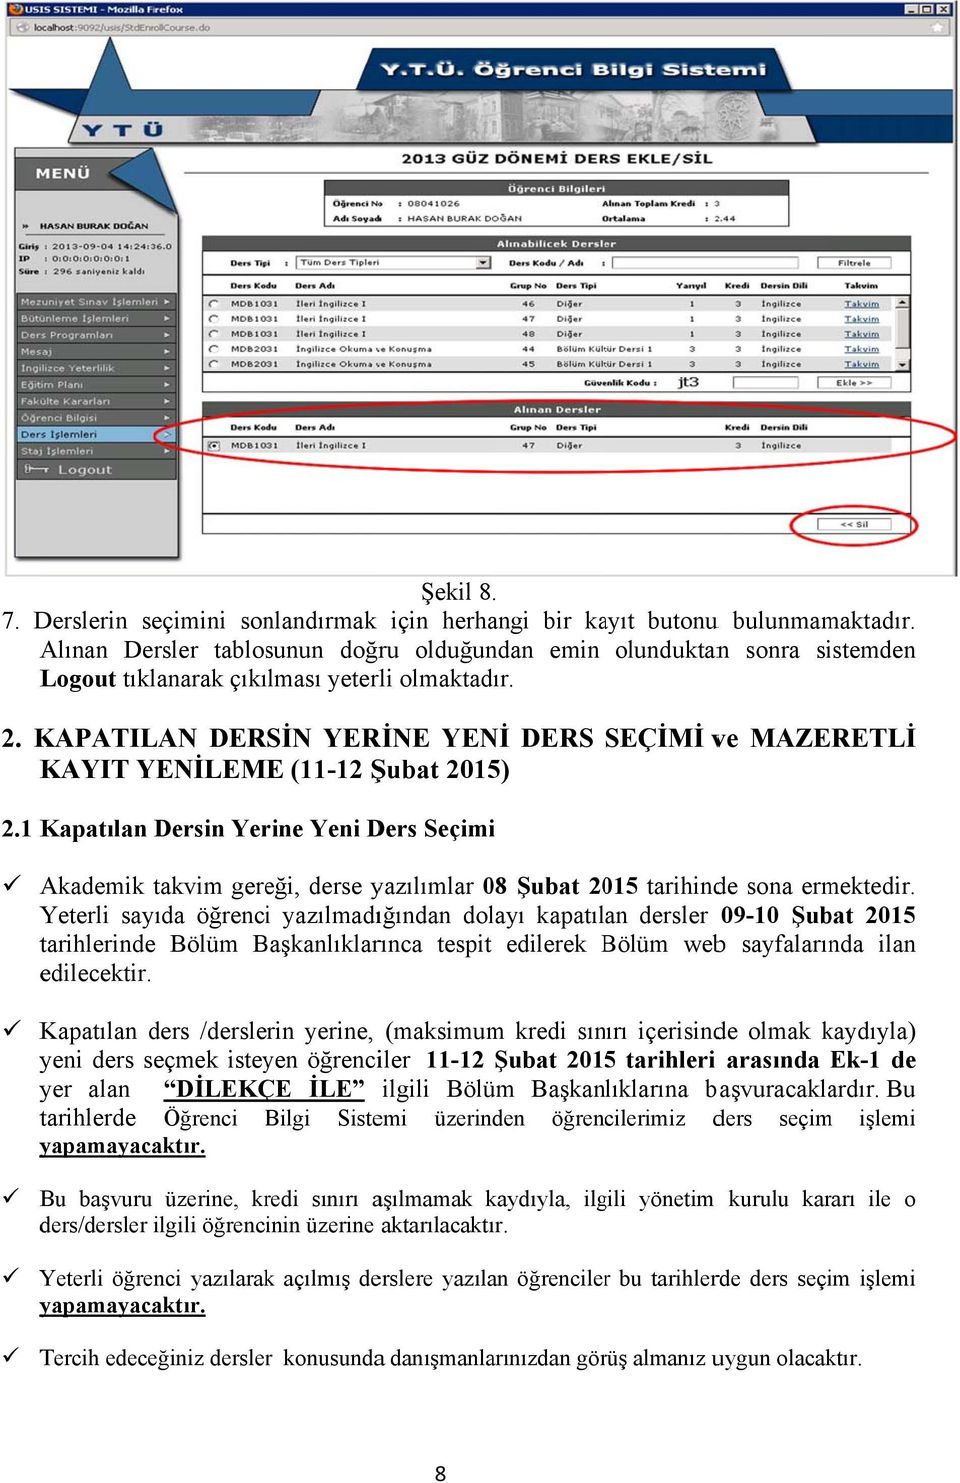 KAPATILAN DERSİN YERİNE YENİ DERS KAYIT YENİLEME (11-12 Şubat 2015) SEÇİMİ ve MAZERETLİ 2.